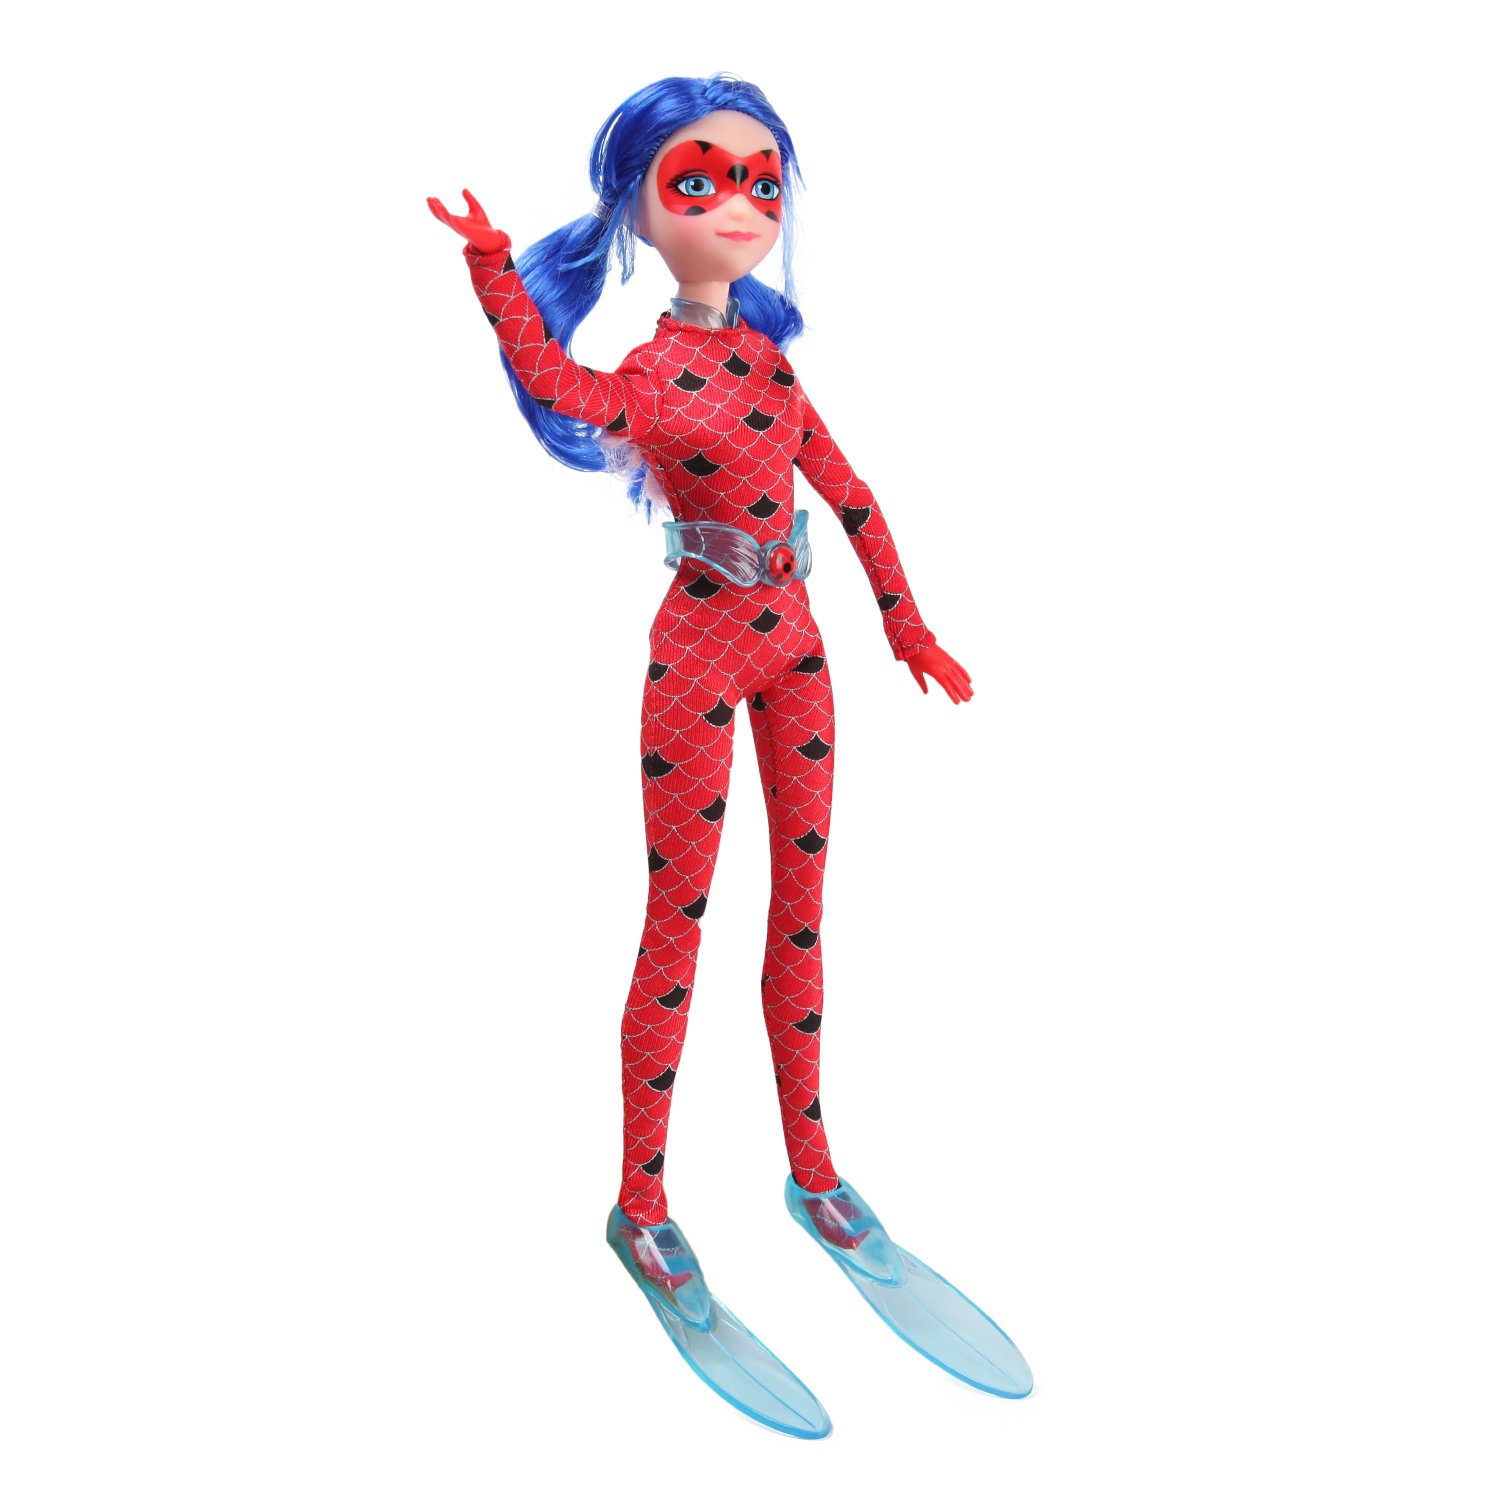 Леди баг игрушка. Кукла Miraculous леди баг. Miraculous леди баг кукла 26 см. Кукла Bandai Ladybug. Леди баг 39745l кукла 26 см леди баг.